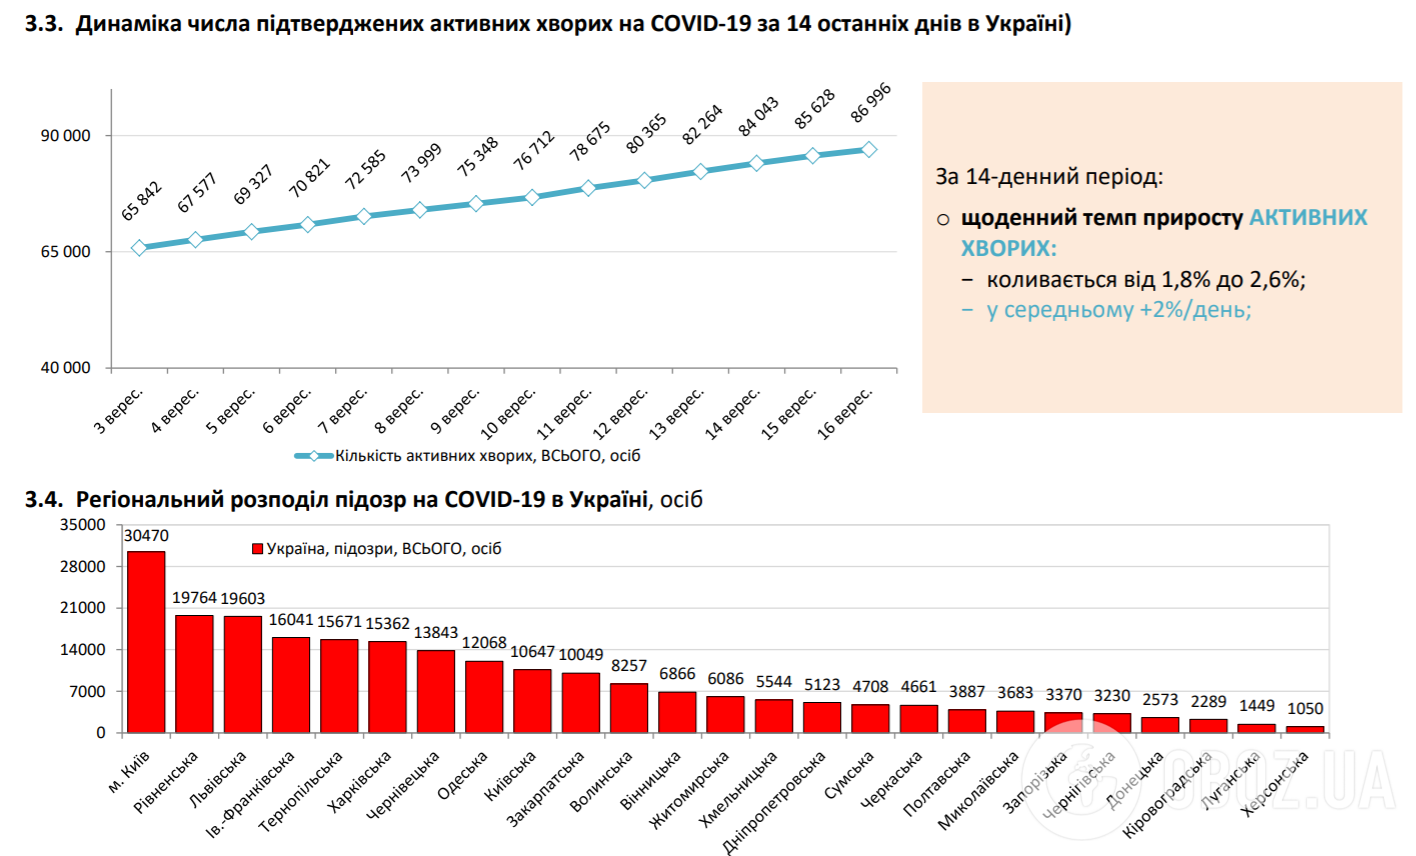 Динамика числа подтвержденных активных больных COVID-19.